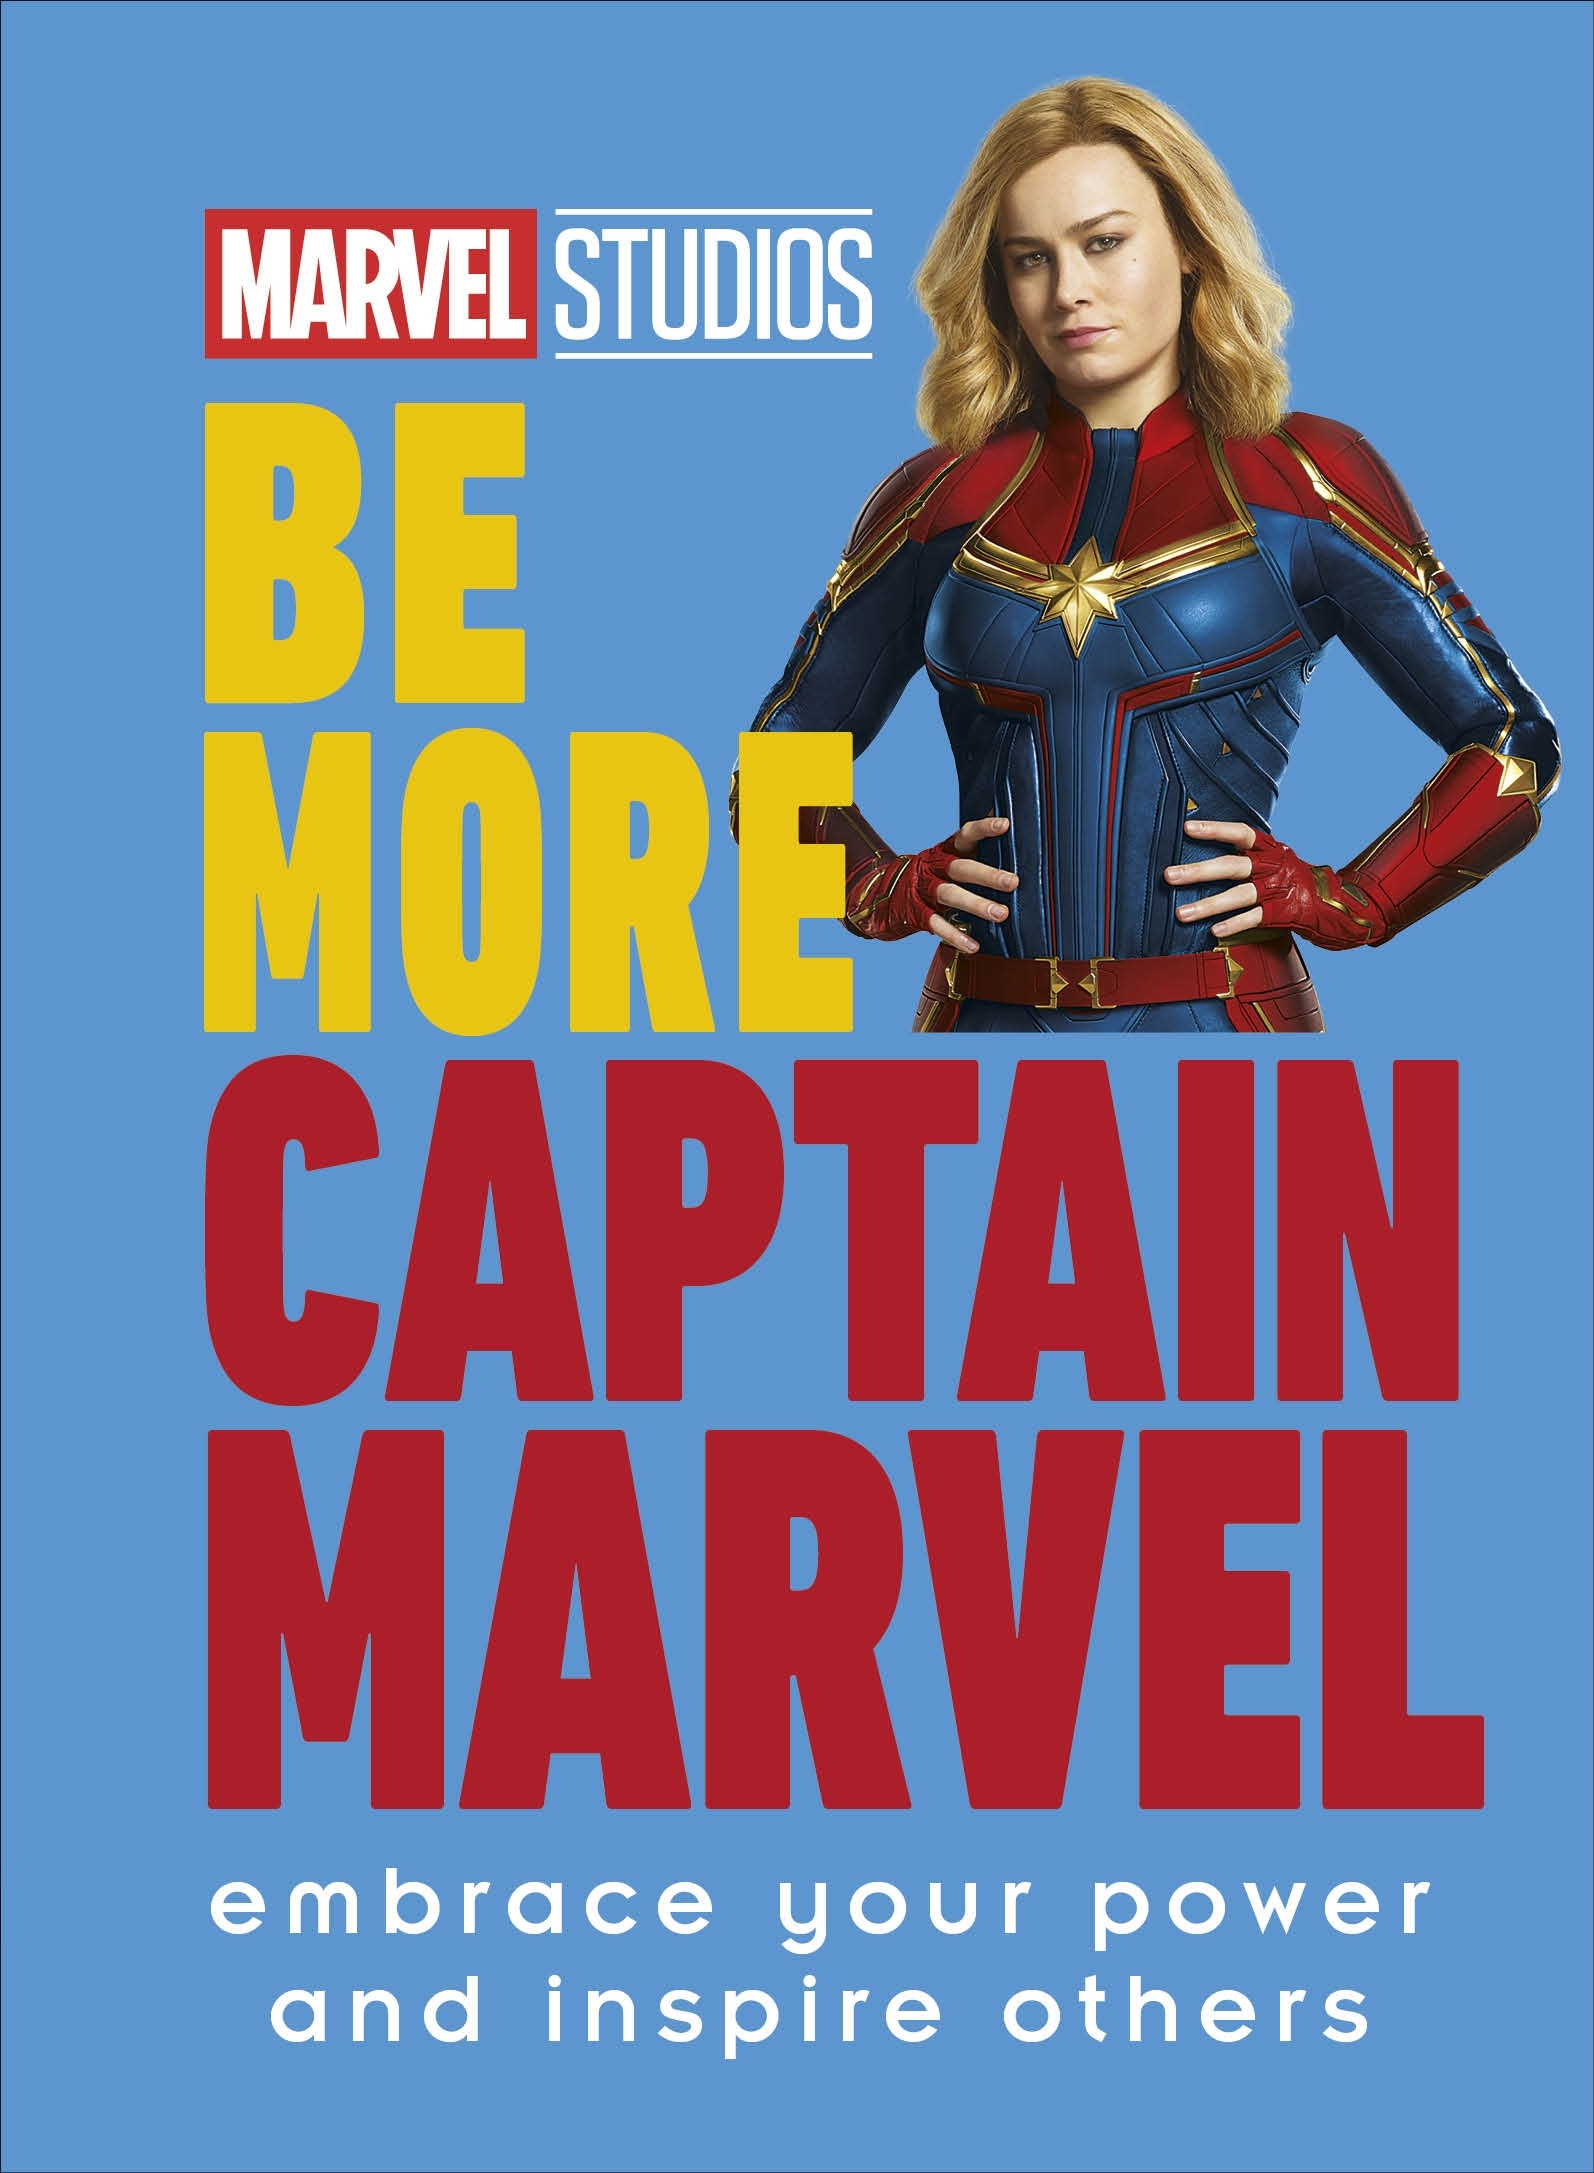 Marvel Studios Be More Captain Marvel